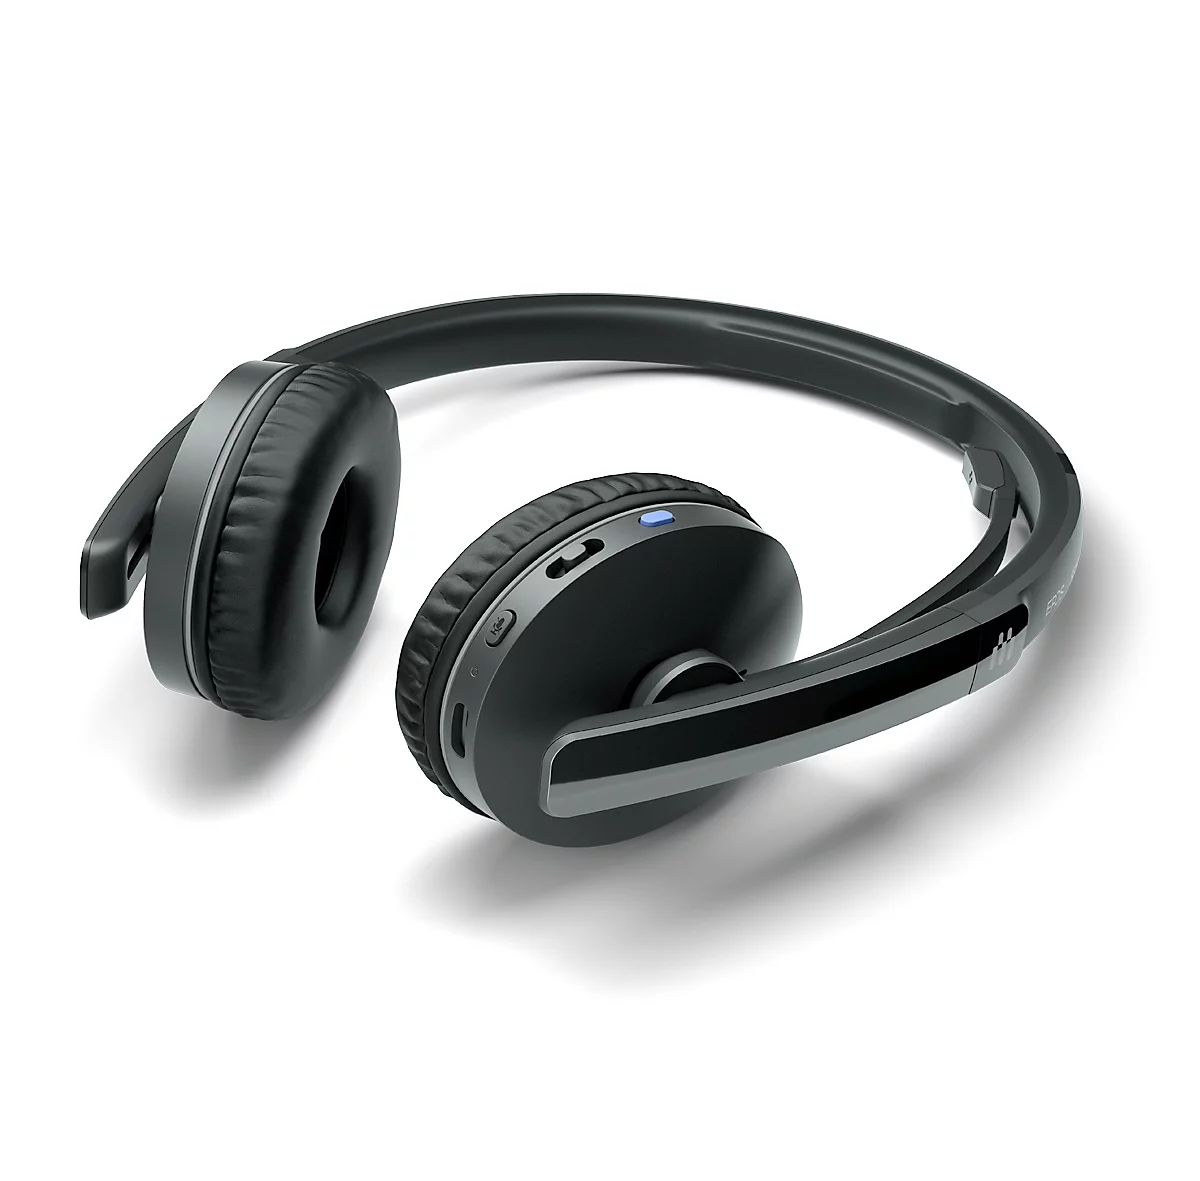 Bluetooth headset EPOS | Sennheiser ADAPT 260, binauraal, UC-geoptimaliseerd, gecertificeerd voor Microsoft Teams®, tot 25 m, tot 27 uur, met USB-dongle, zwart